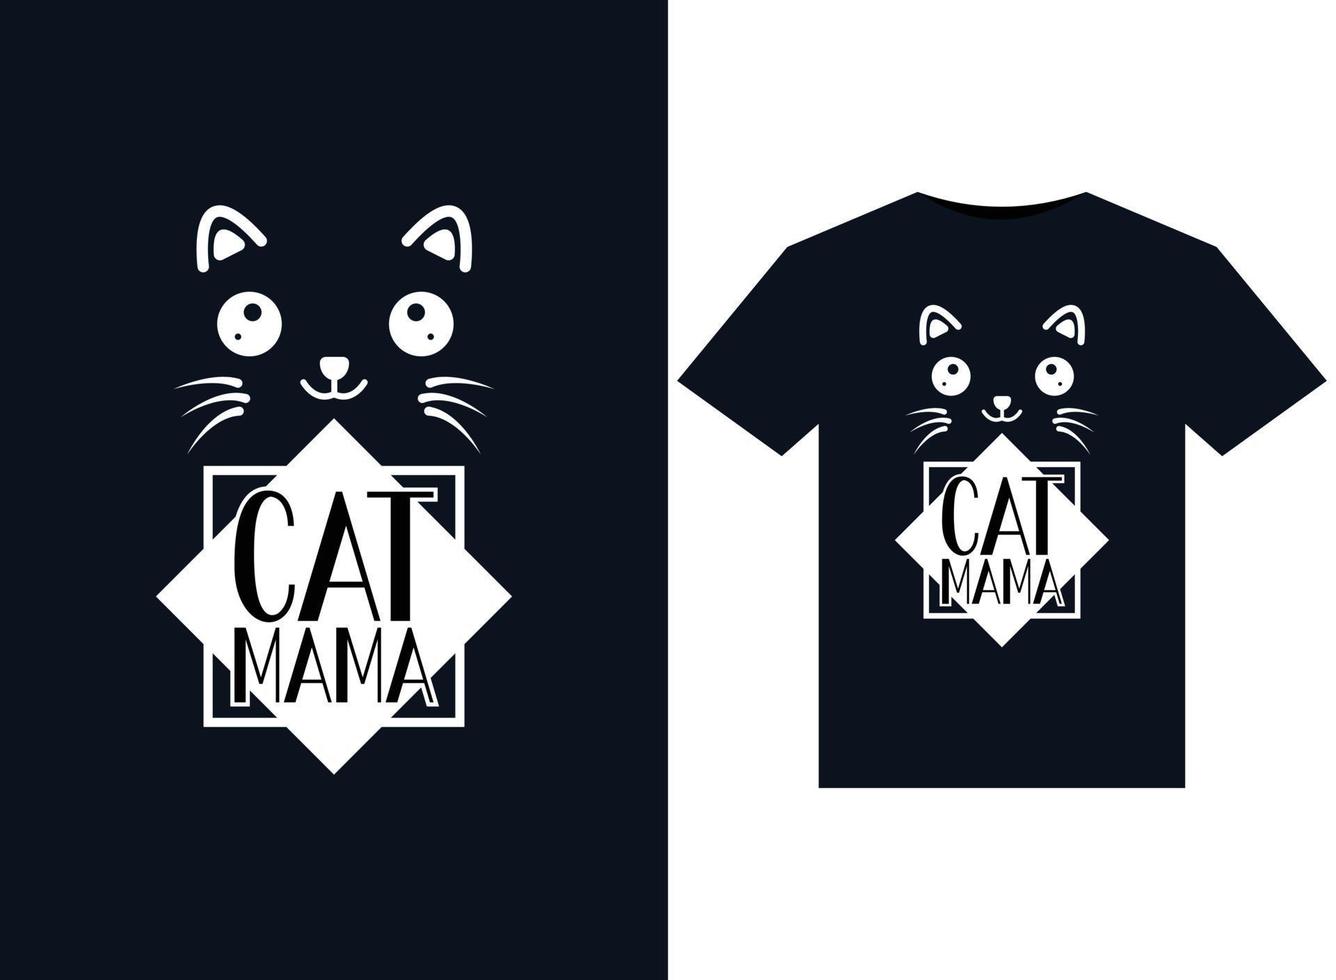 Katzenmama-Illustrationen für druckfertiges T-Shirt-Design vektor